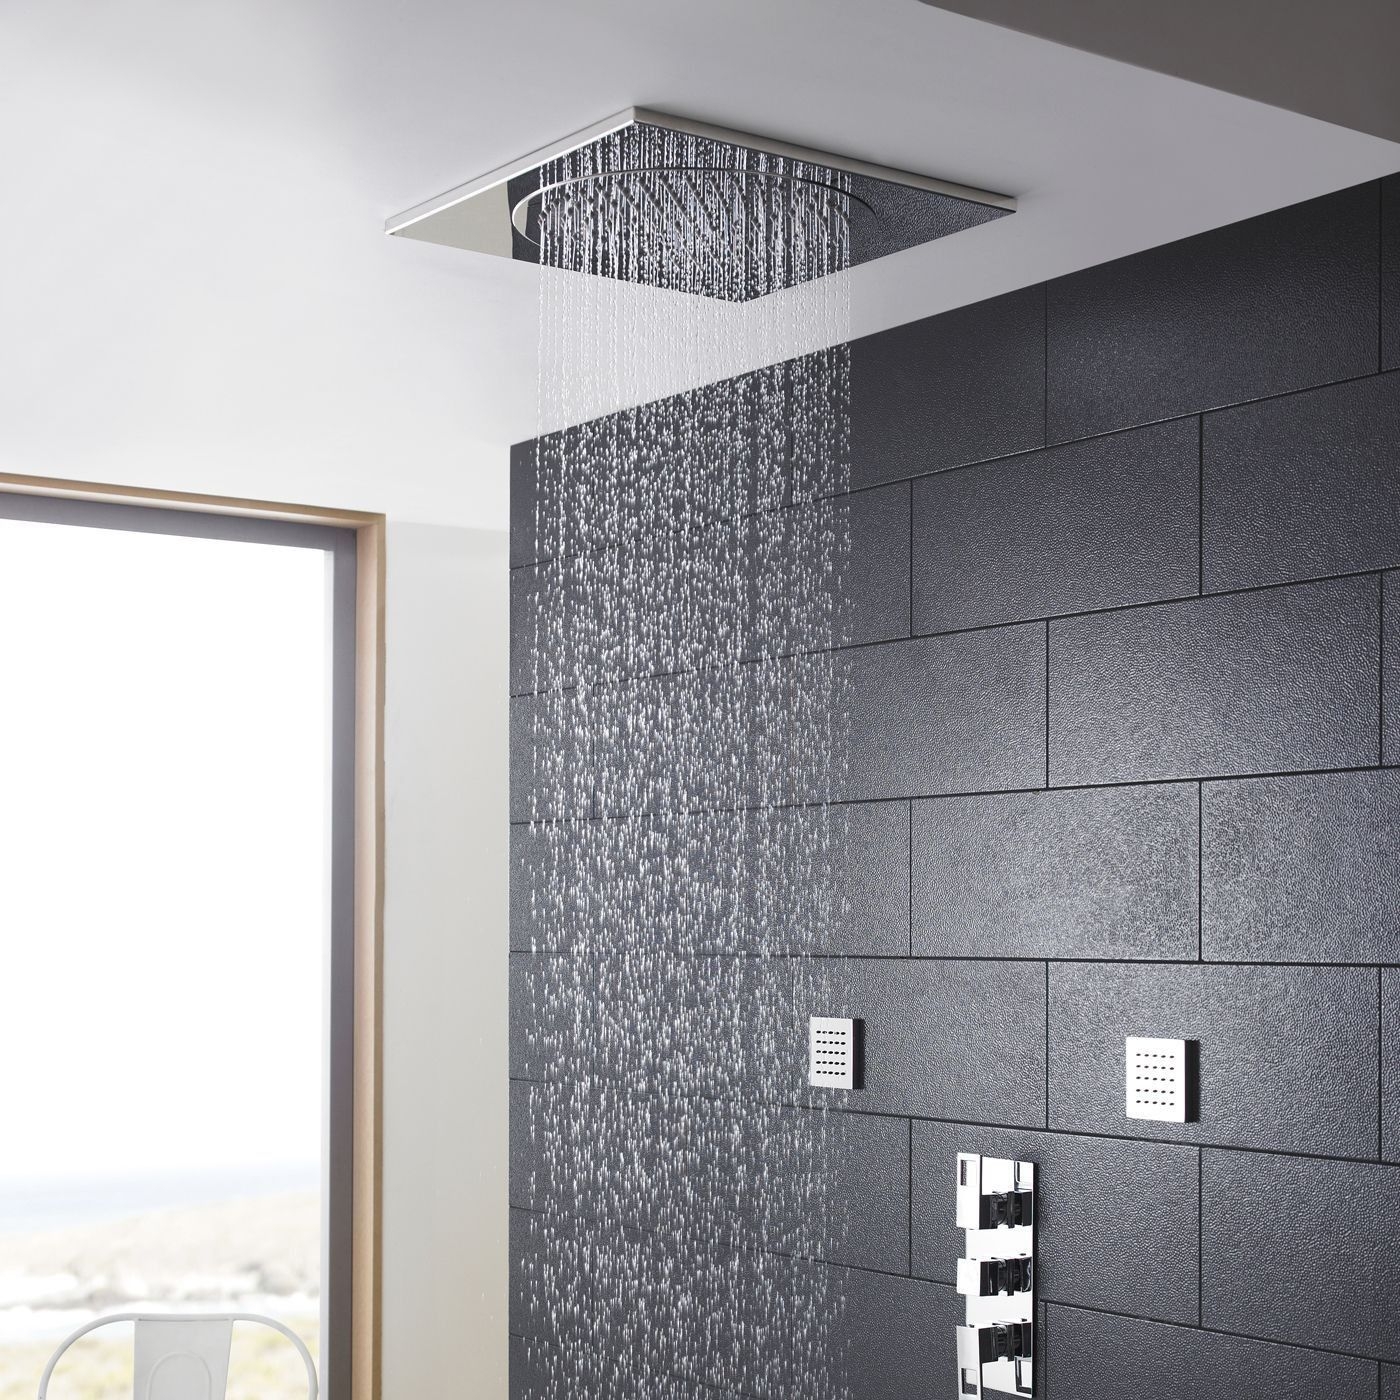 Ceiling Tile Rain Shower Ceiling Tile Rain Shower ceiling tile shower head 20 1400 X 1400